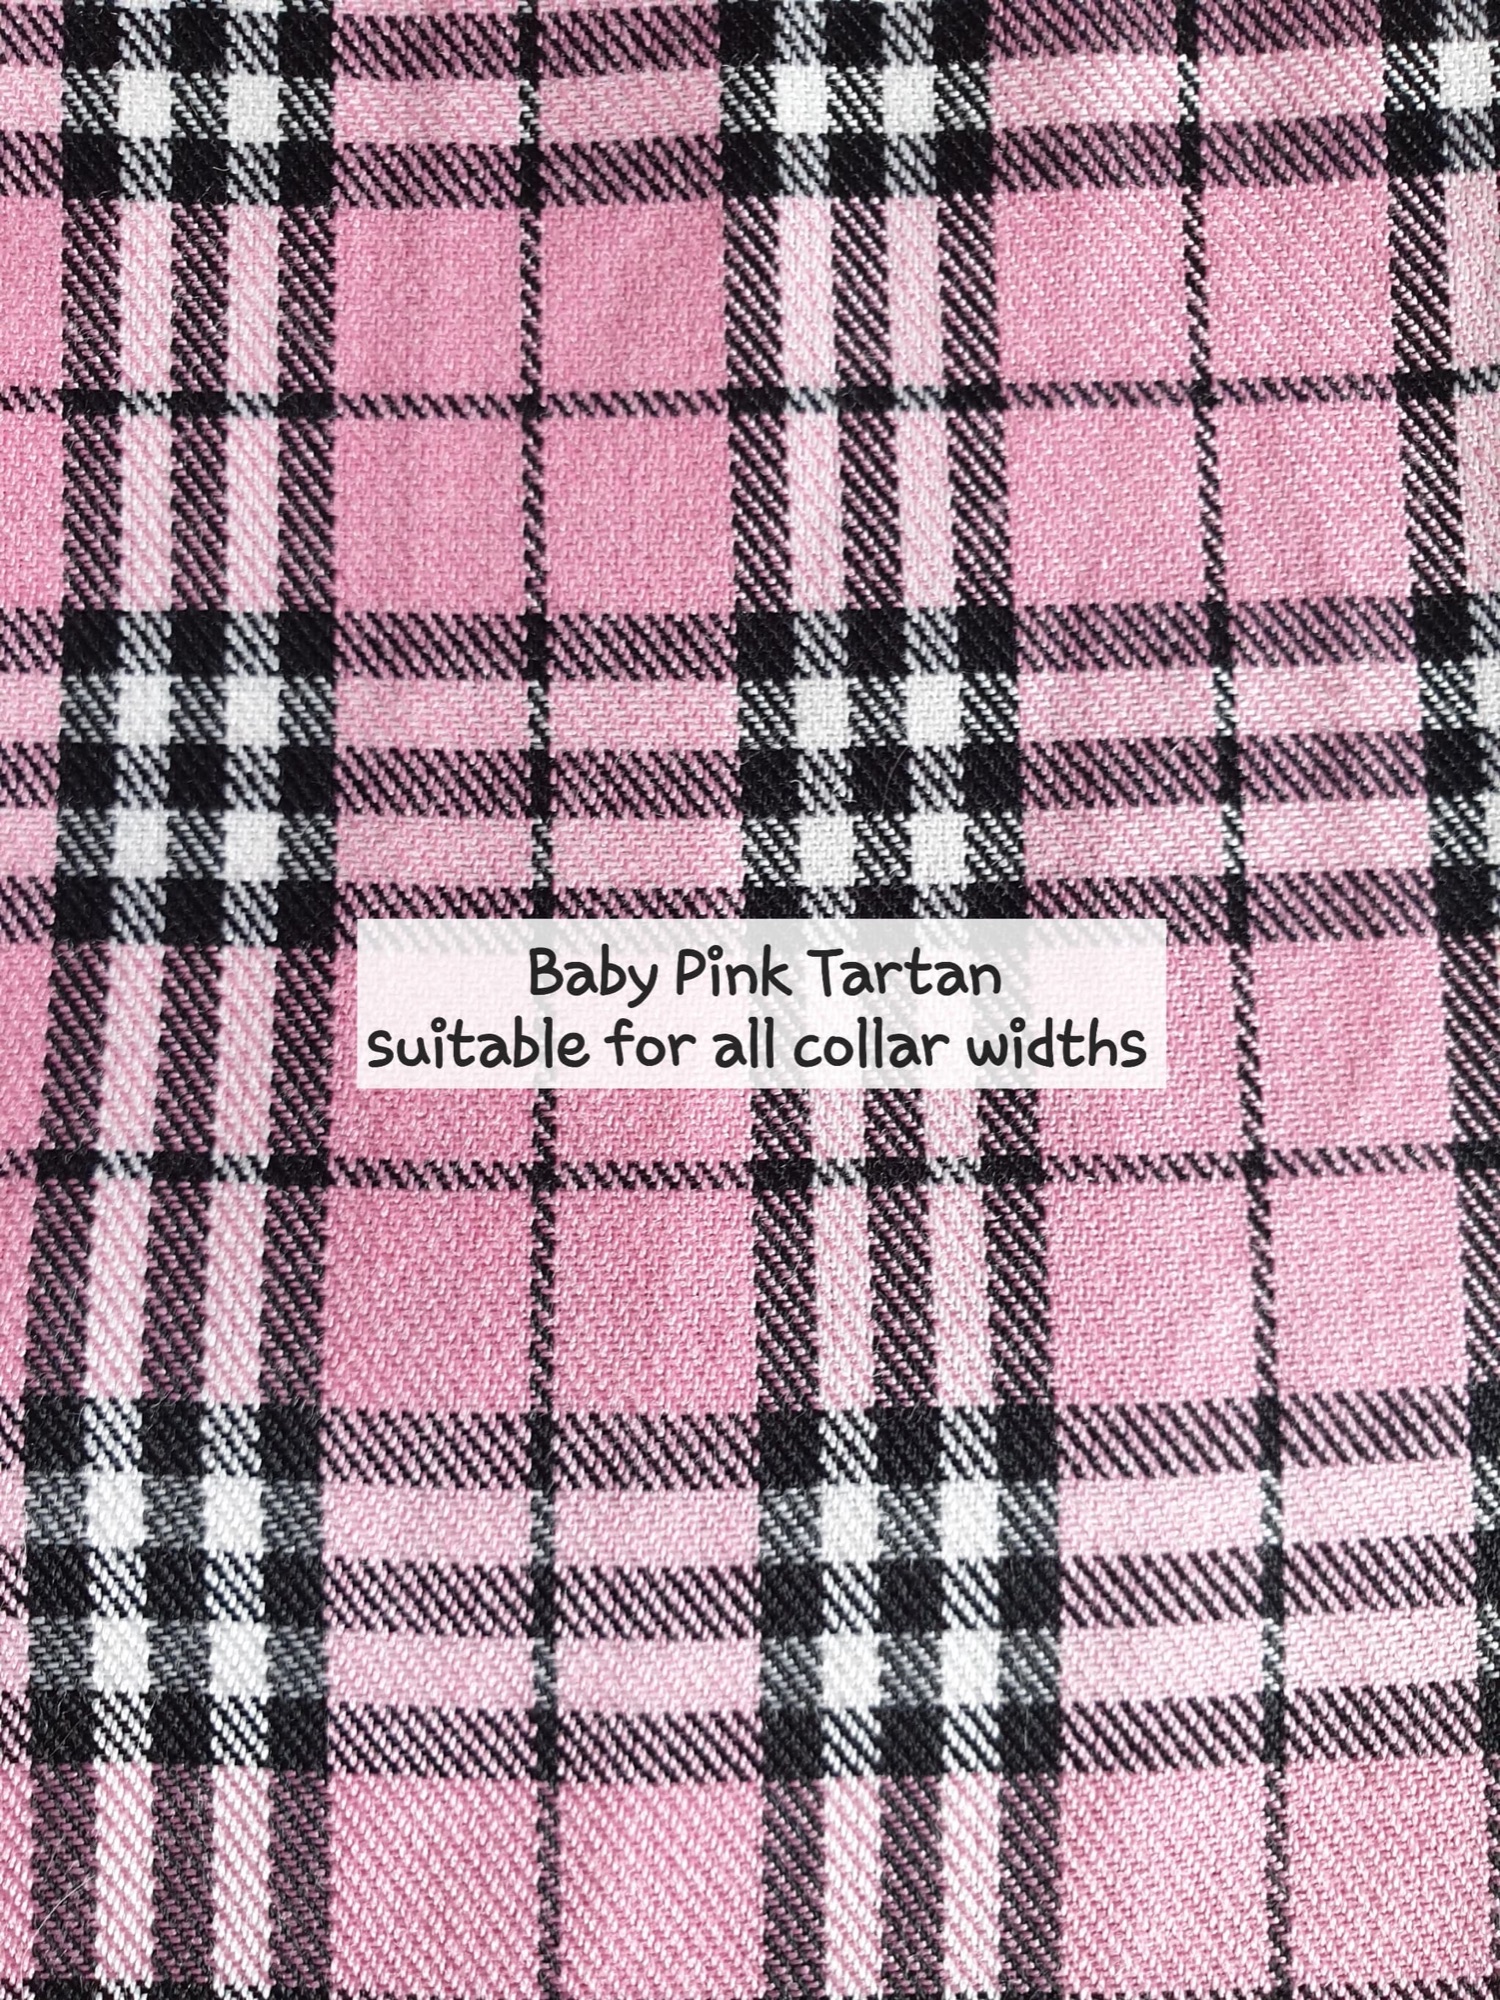 Baby Pink Tartan